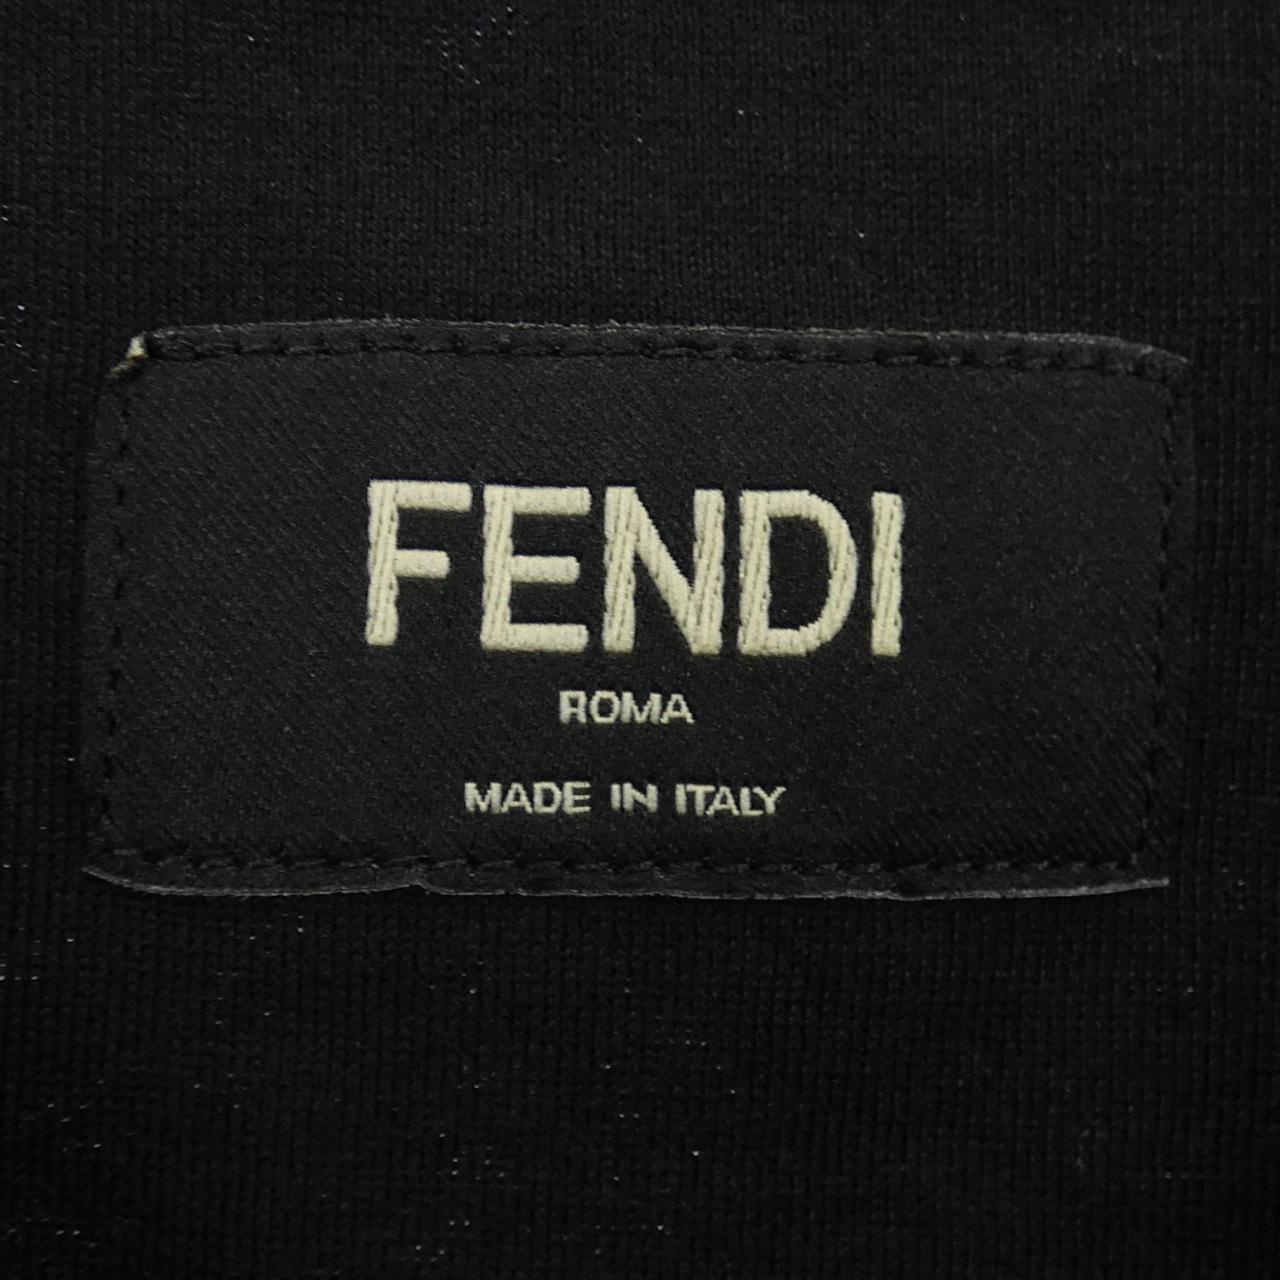 FENDI T-shirt